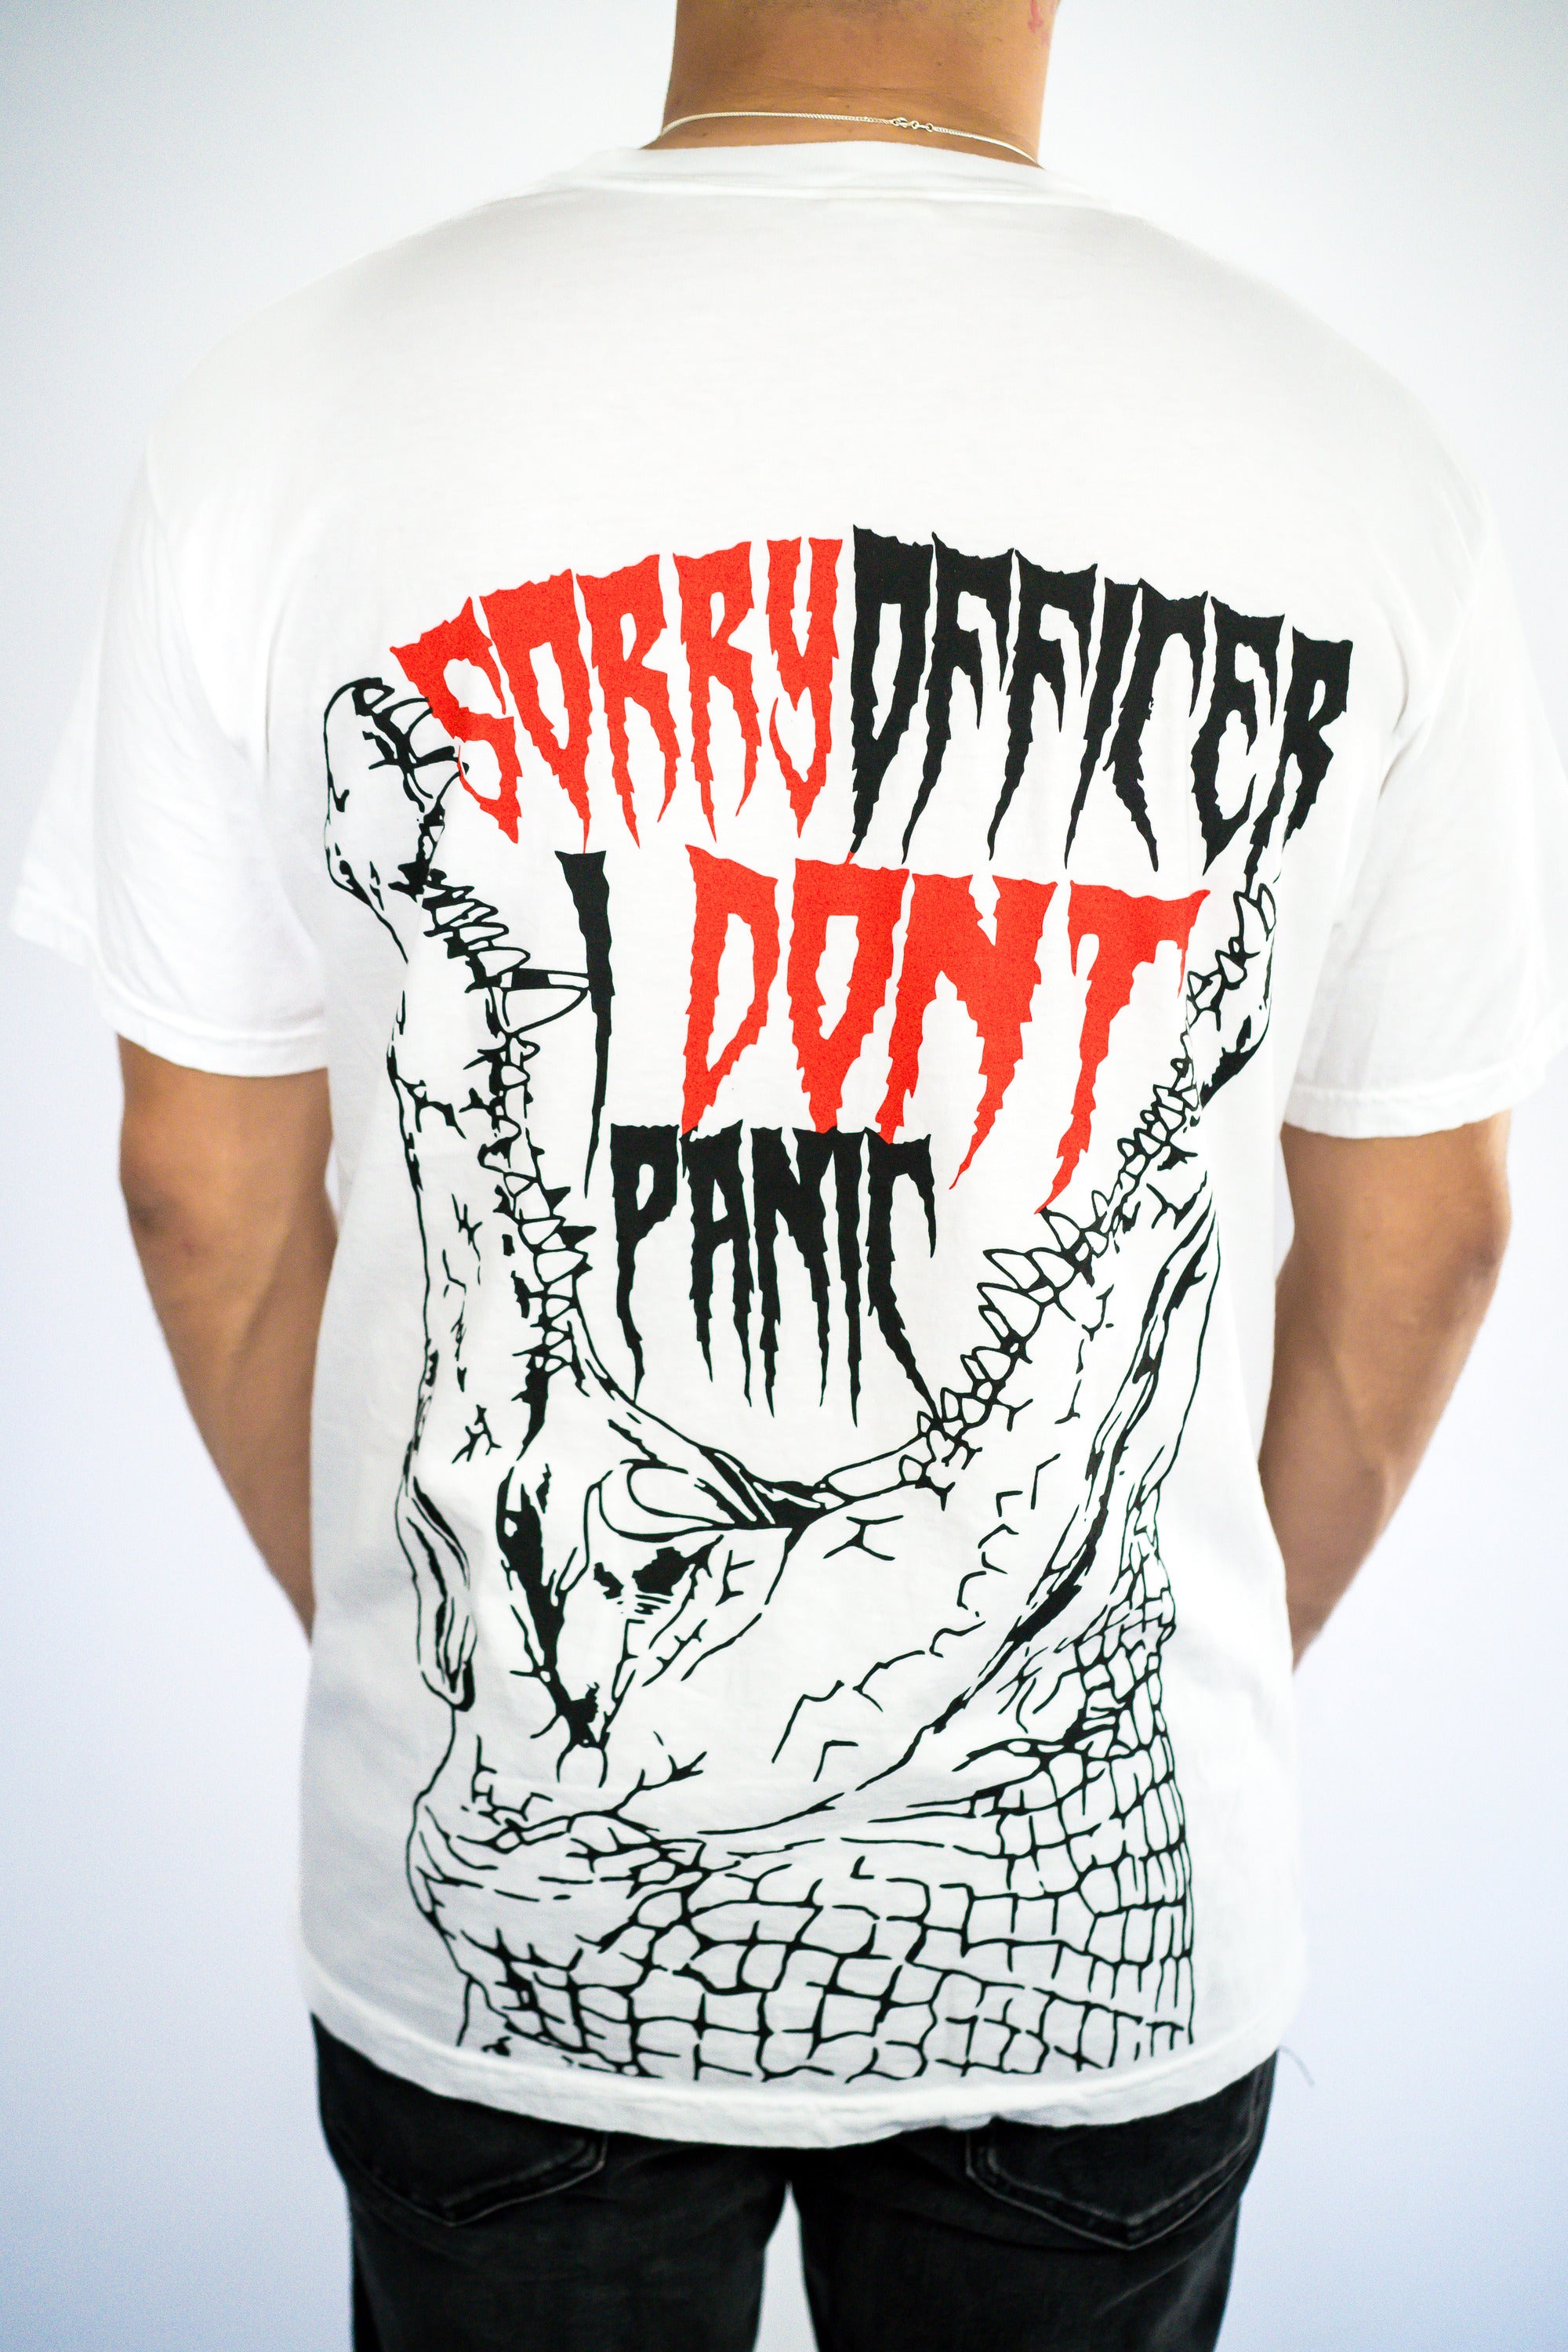 No Panic Gator T Shirt ( Limited )